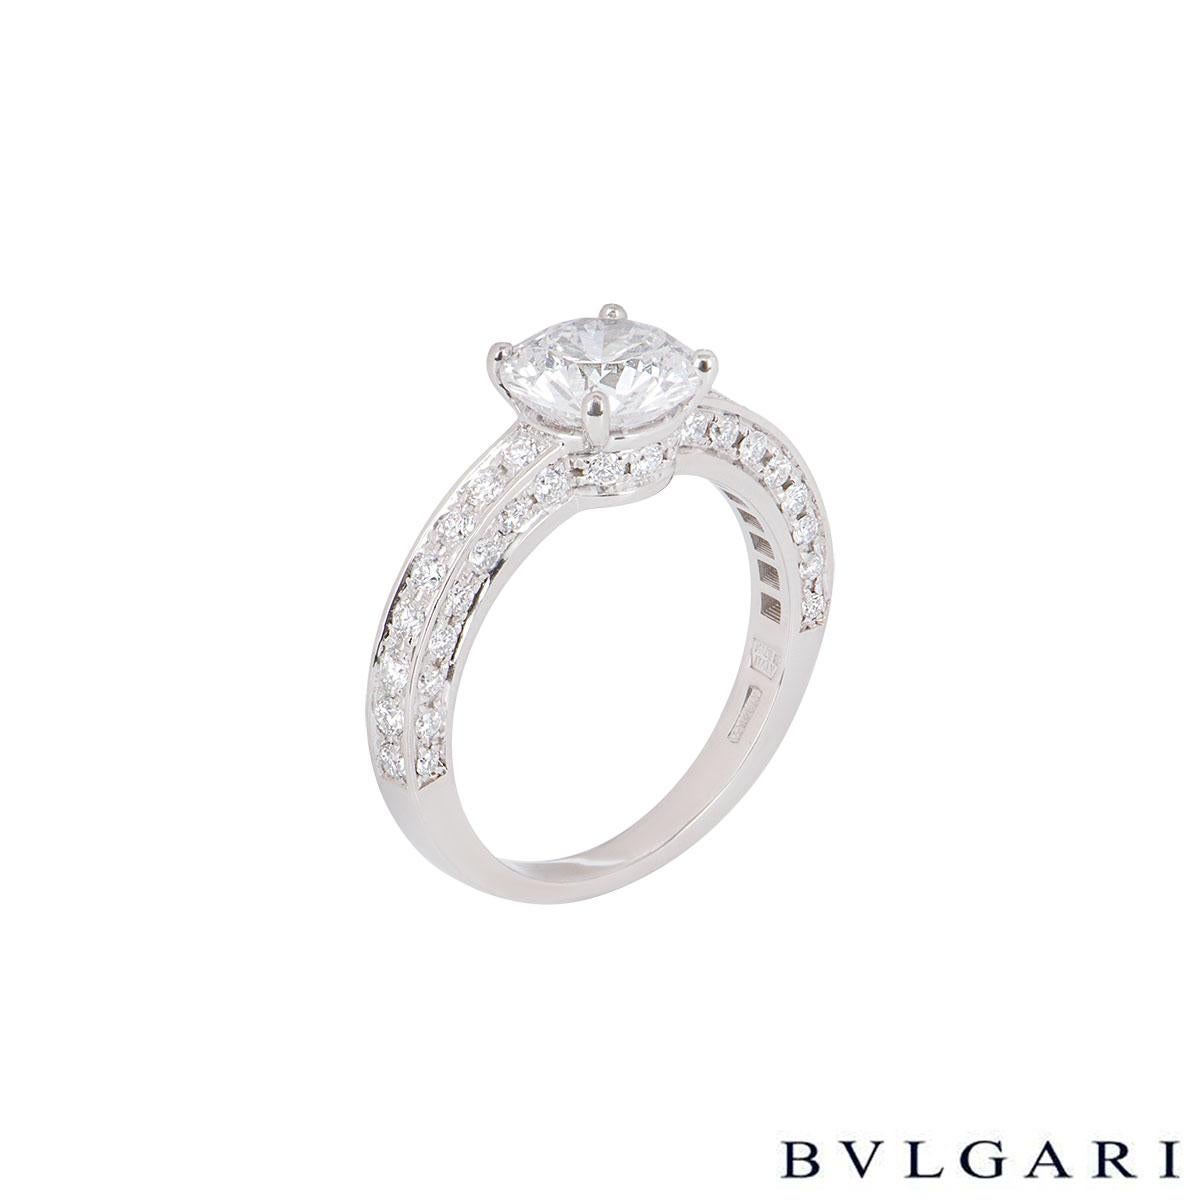 bulgari diamond ring price